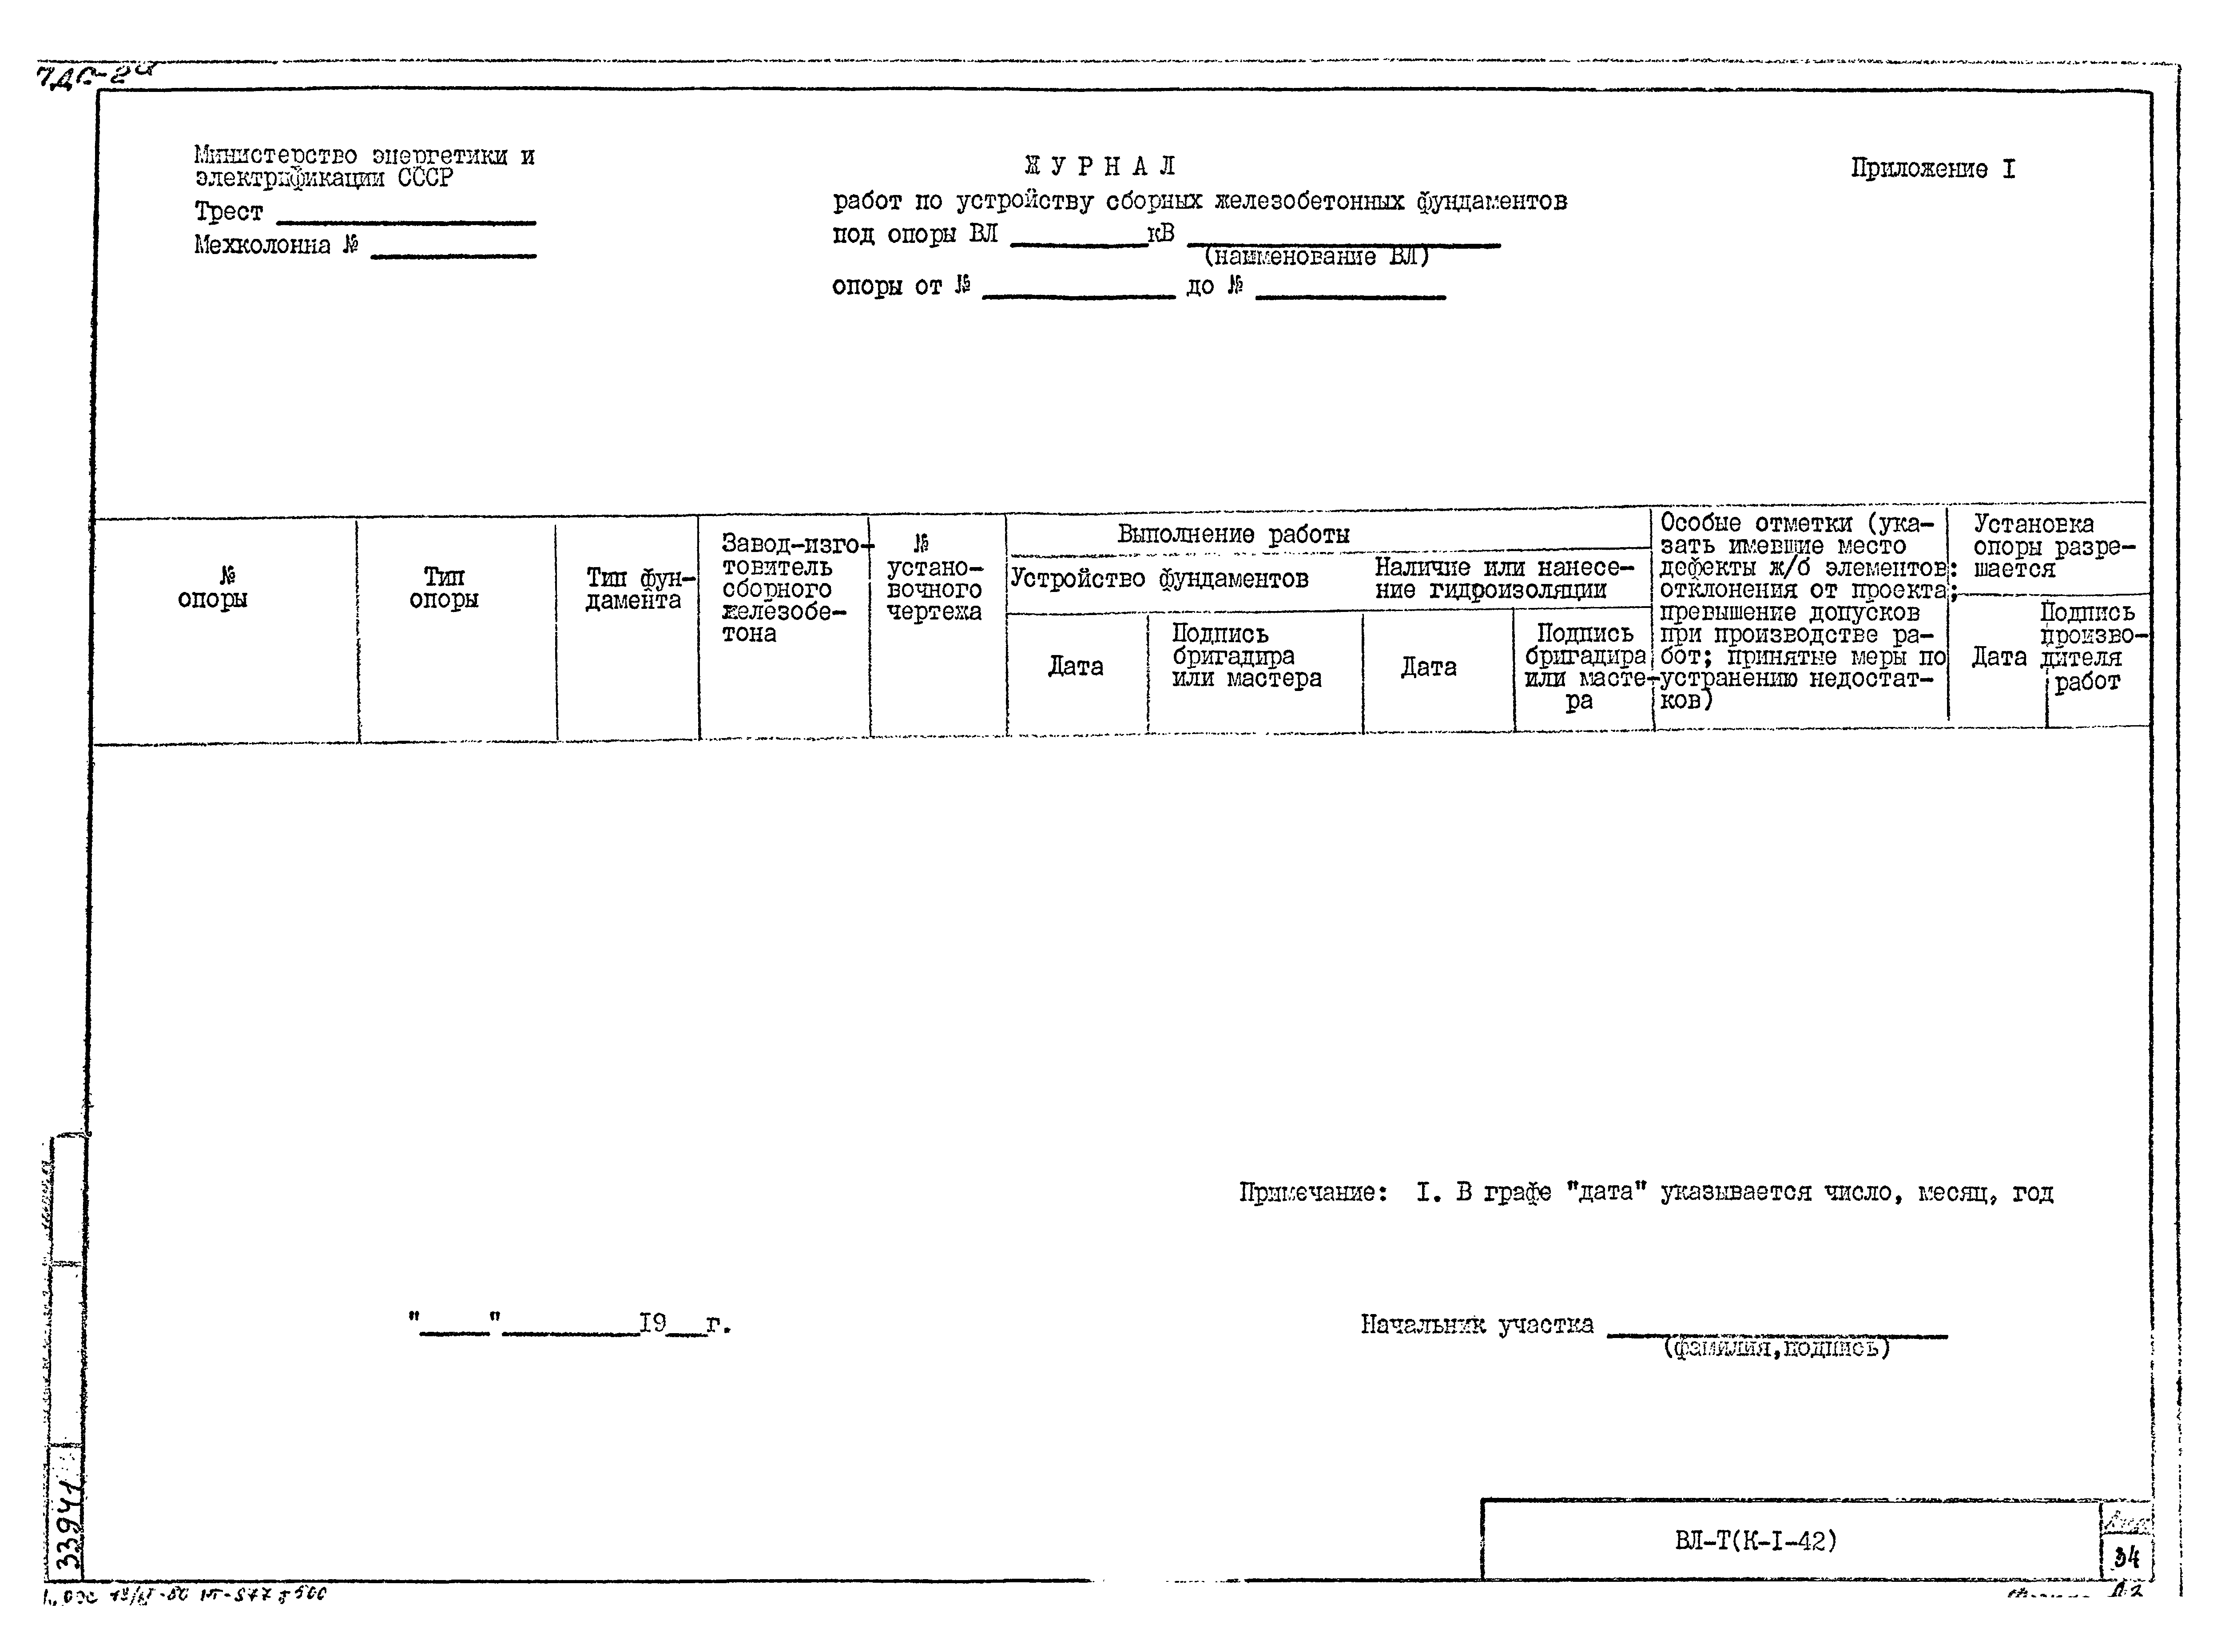 Технологическая карта К-1-42-1